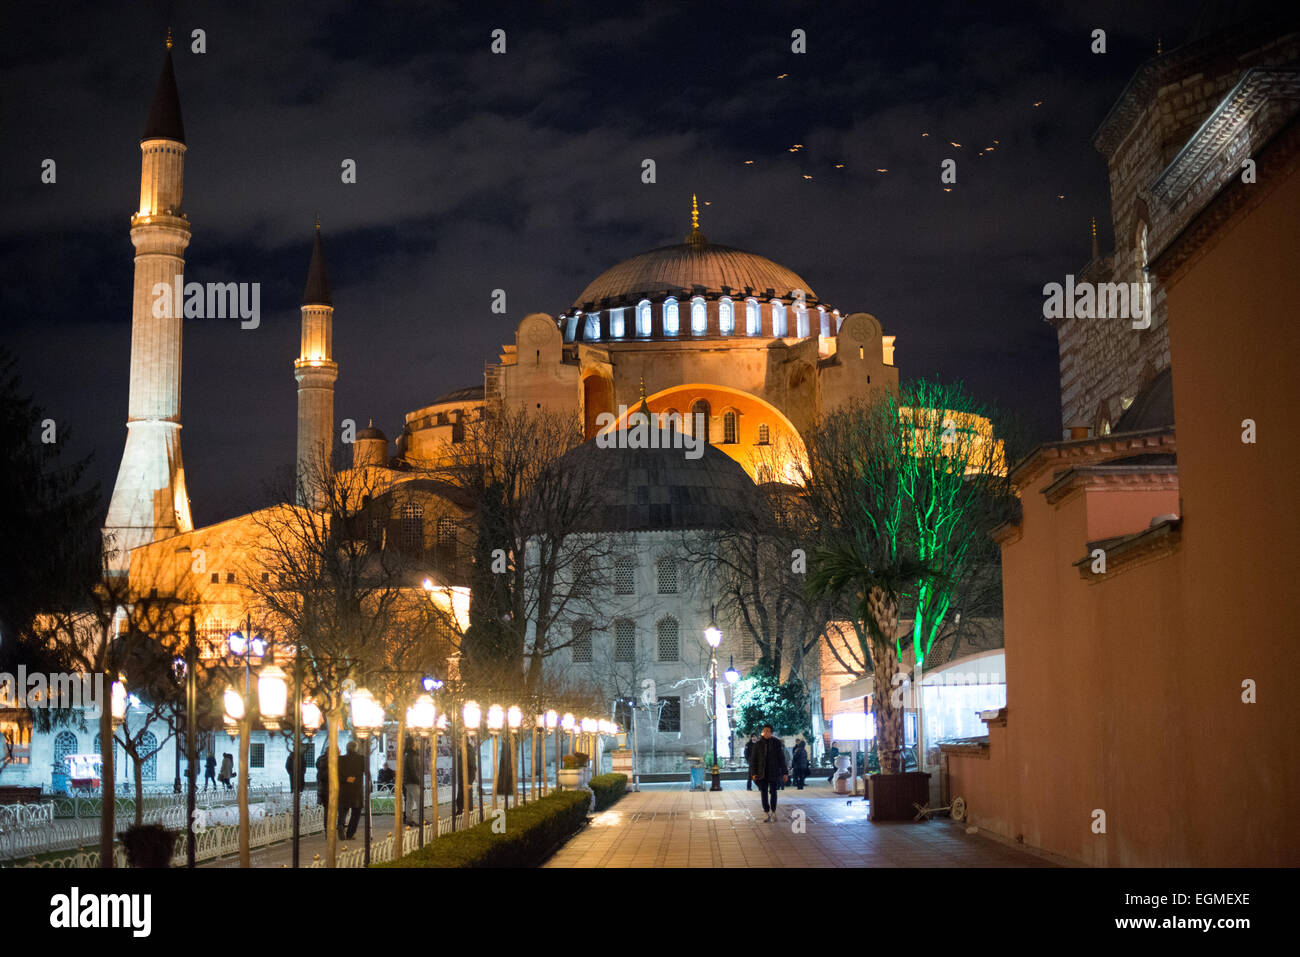 ISTANBUL, Turquie - Vue sur Sainte-Sophie depuis le parc Sultanahmet la nuit. Construit en 537, il a servi de cathédrale orthodoxe orientale, de cathédrale catholique romaine, de mosquée et maintenant de musée. Également connu sous le nom d'Ayasofya ou d'Aya Sofia, c'est l'un des principaux monuments d'Istanbul. En juillet 2020, le président turc Recep Tayyip Erdogan décrète que Sainte-Sophie serait reconvertie en mosquée. Banque D'Images